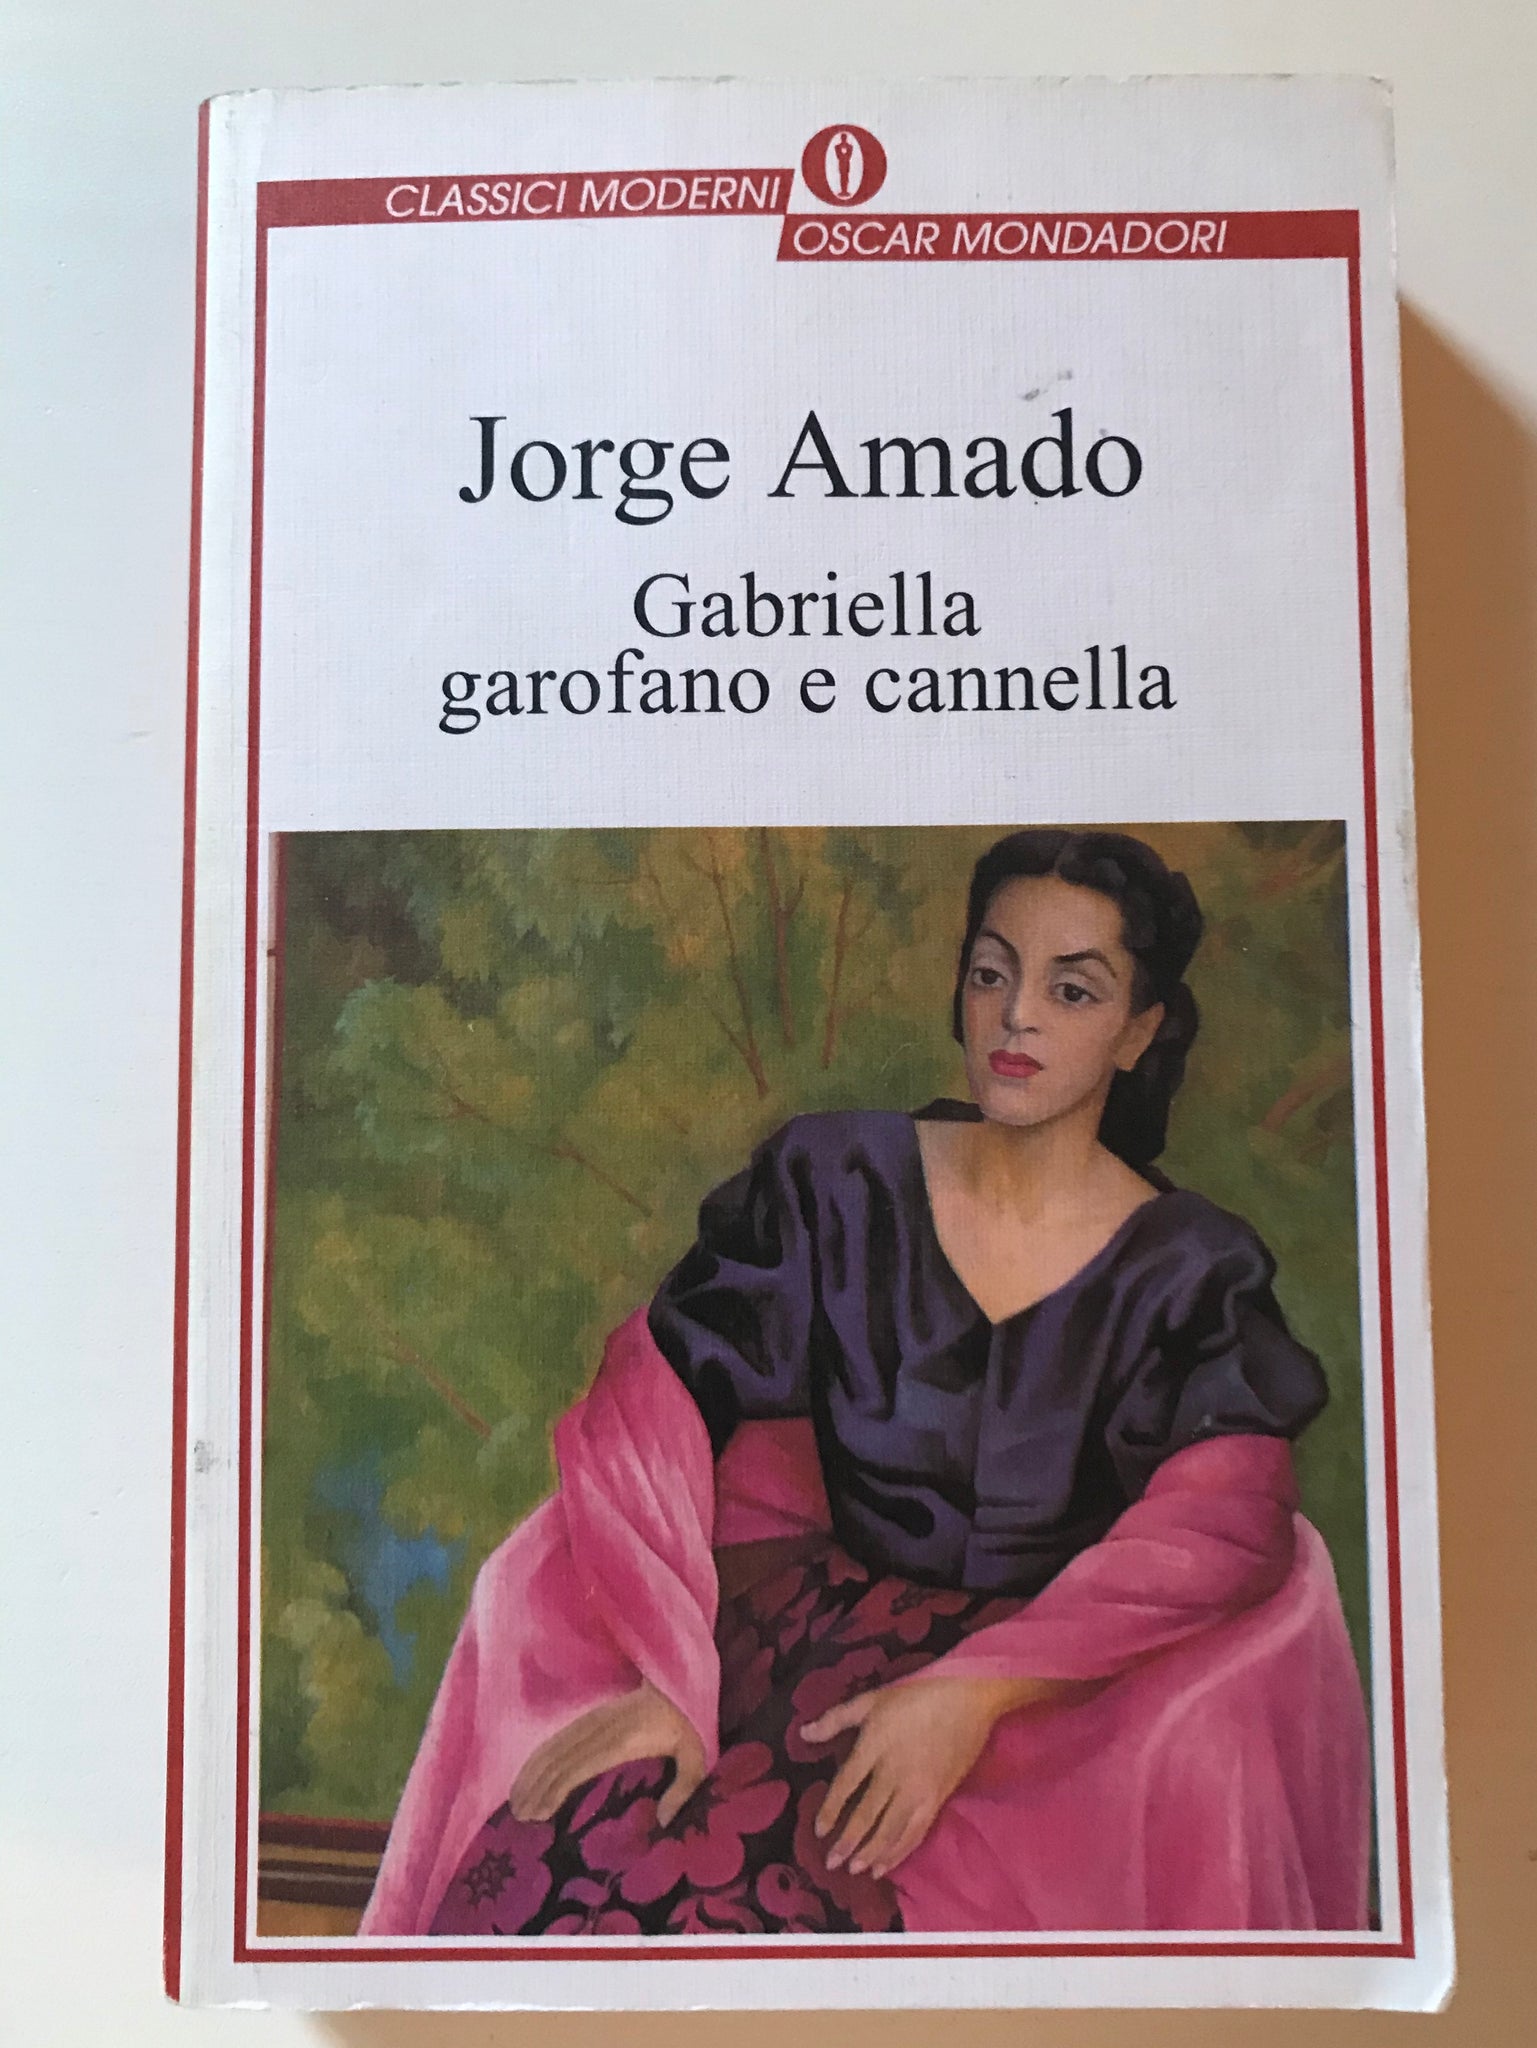 Jorge Amado - Gabriella garofano e cannella